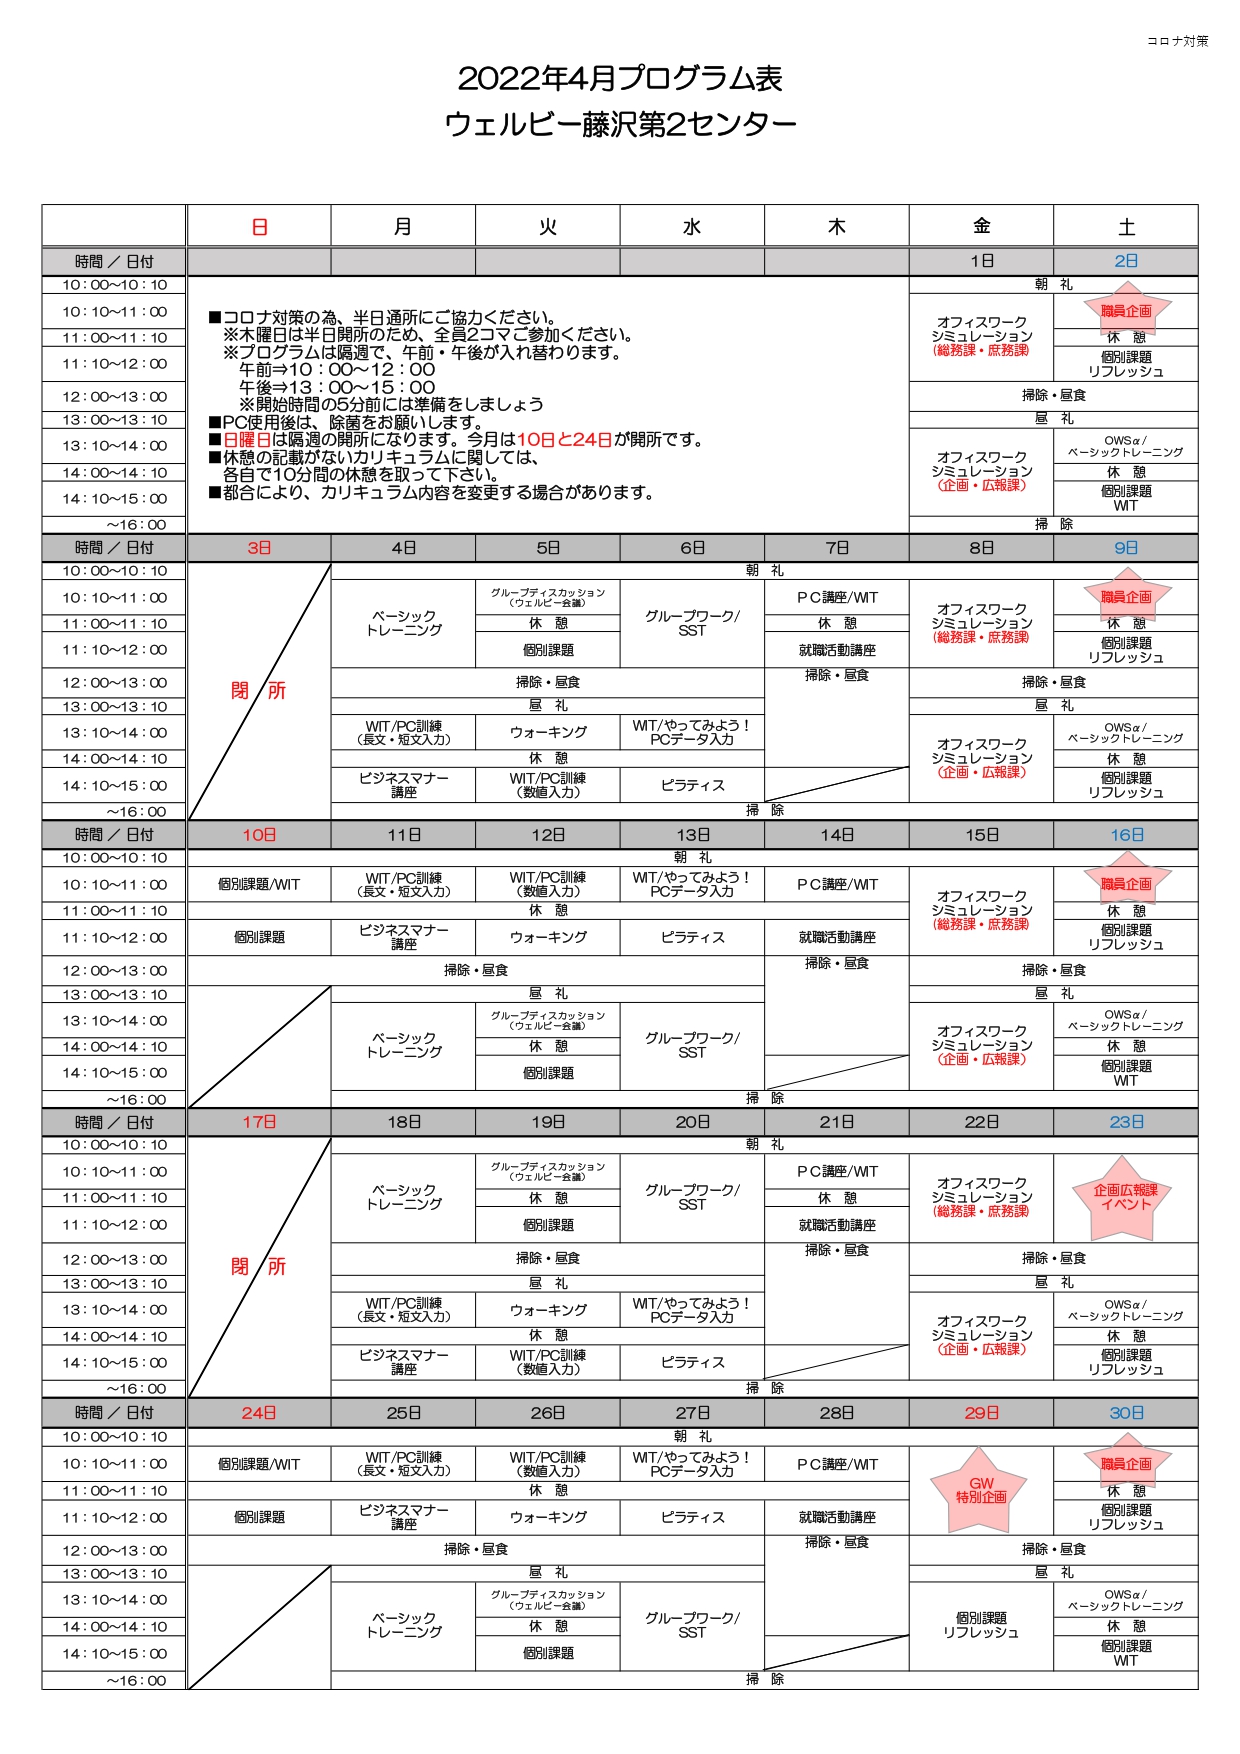 【ウェルビー藤沢第2センター】プログラム表4月申請用_page-0001